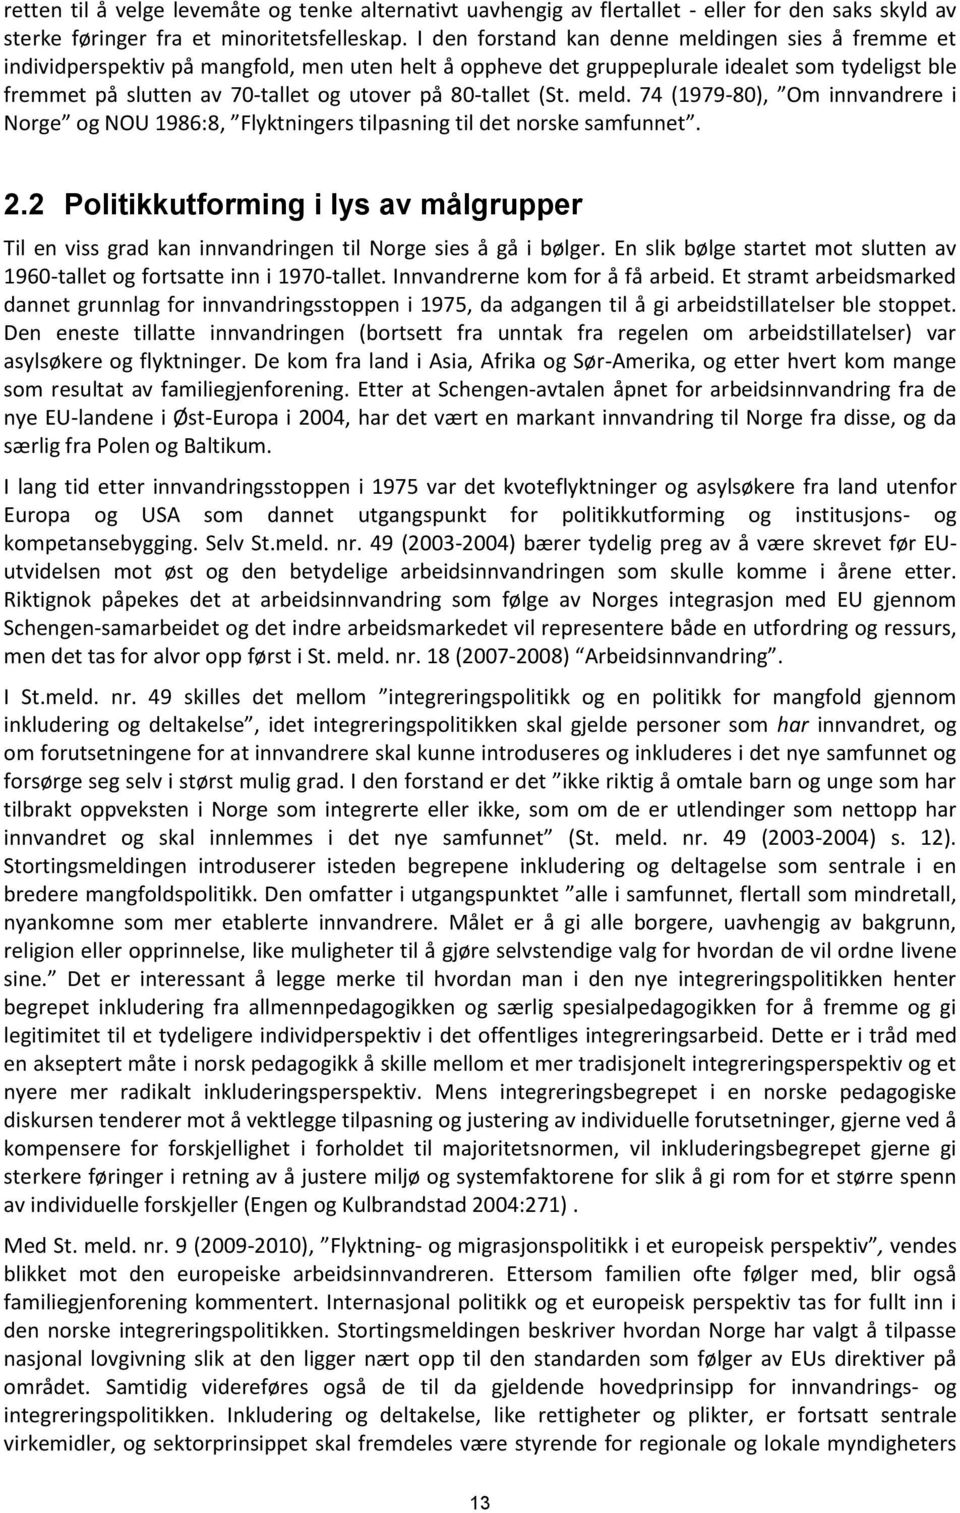 80-tallet (St. meld. 74 (1979-80), Om innvandrere i Norge og NOU 1986:8, Flyktningers tilpasning til det norske samfunnet. 2.